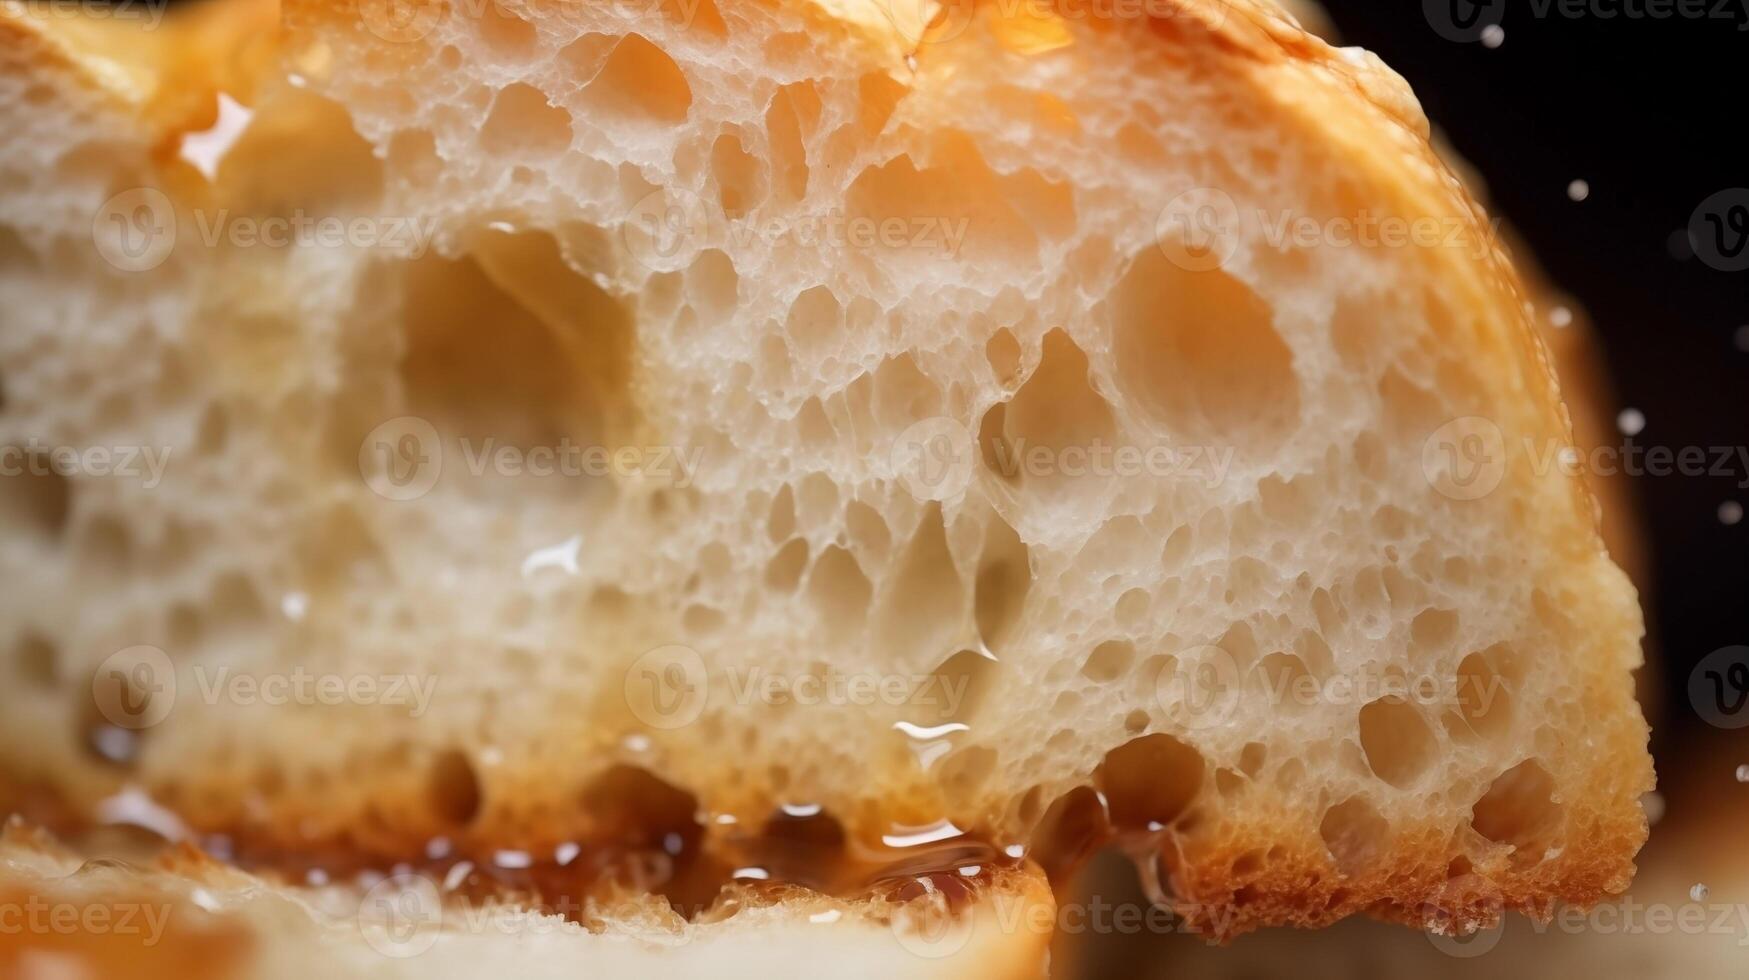 extreem detailopname van smakelijk brood. voedsel fotografie foto